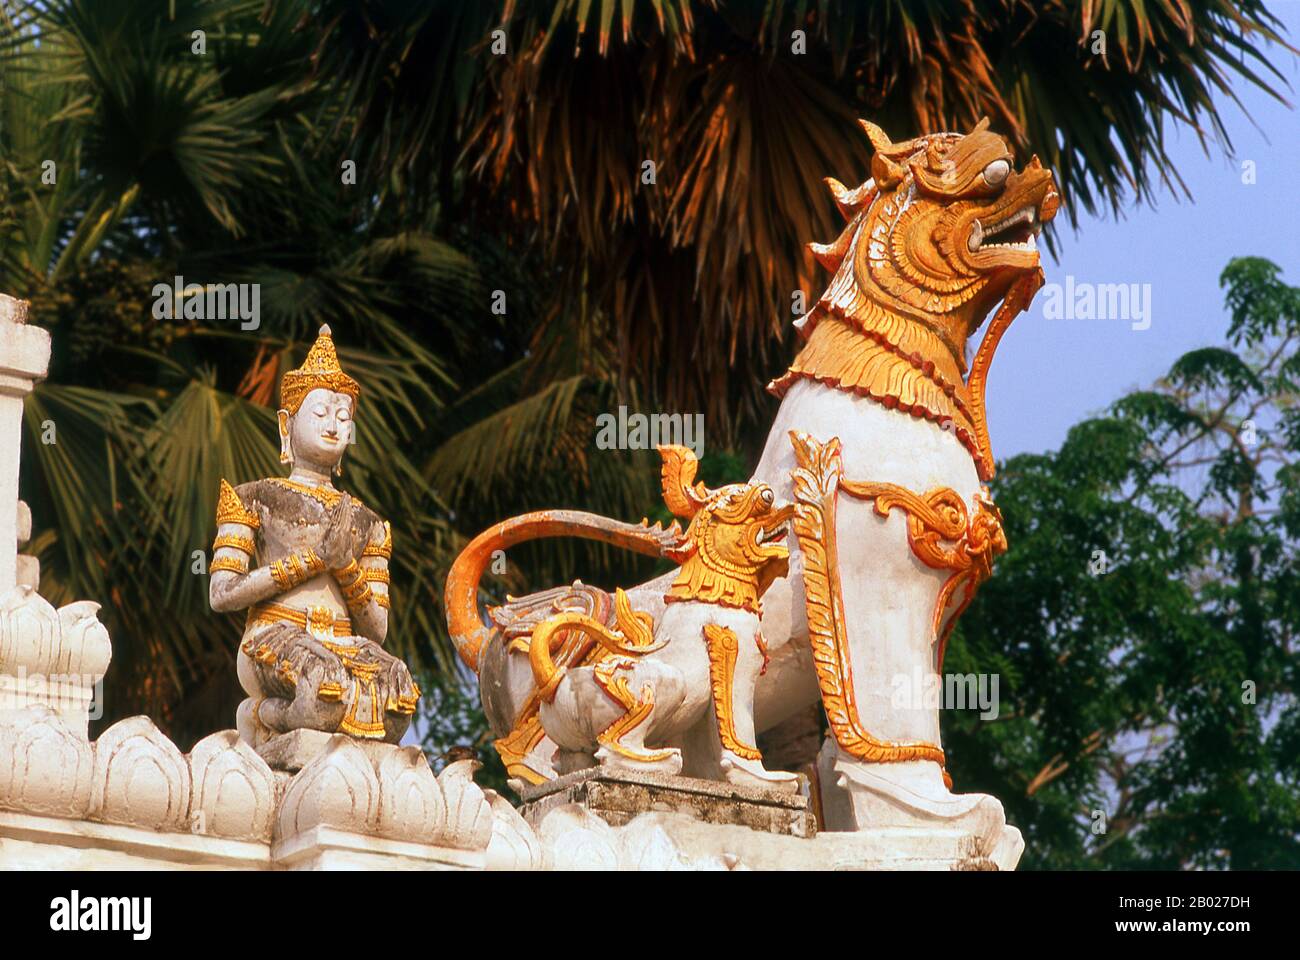 Wat Chiang Yeun es un templo budista del siglo XVI en Chiang Mai. Atiende a la comunidad local Shan (Tai Yai) que se han asentado en la zona. Chiang Mai, a veces escrito como 'Chiengmai' o 'Chiangmai', es la ciudad más grande y culturalmente significativa del norte de Tailandia, y es la capital de la provincia de Chiang Mai. Se encuentra a 700 km (435 mi) al norte de Bangkok, entre las montañas más altas del país. La ciudad está en el río Ping, un afluente importante del río Chao Phraya. El rey Mengrai fundó la ciudad de Chiang Mai (que significa "nueva ciudad") en 1296, y sucedió a Chiang Rai como capit Foto de stock